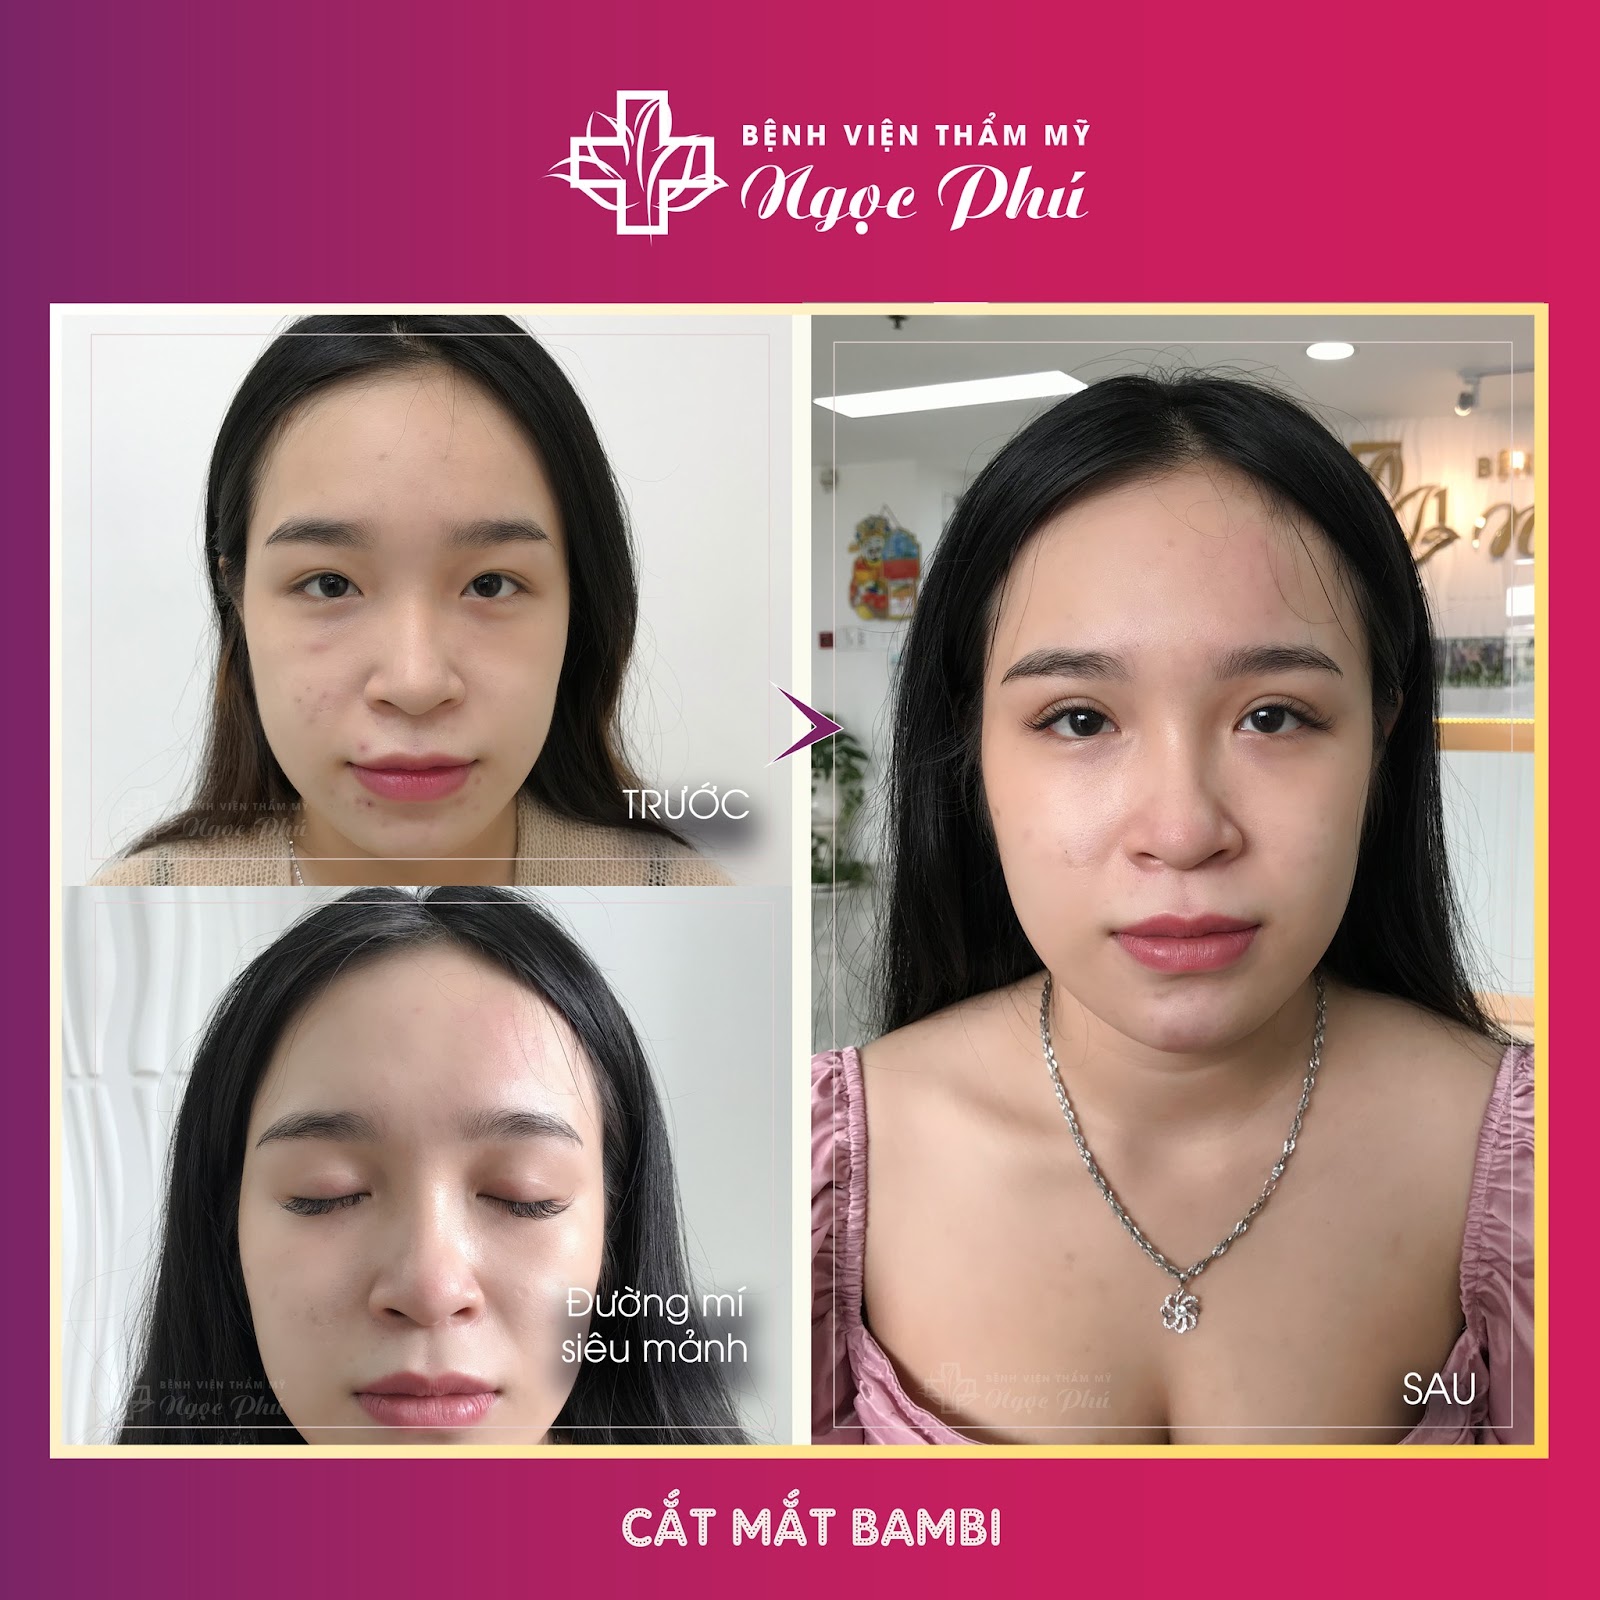 Chị T.D.L (30 tuổi - Bình Thạnh) - Khách hàng thực tế tại Bệnh viện Thẩm mỹ Ngọc Phú chia sẻ về kinh nghiệm cắt mắt 2 mí 